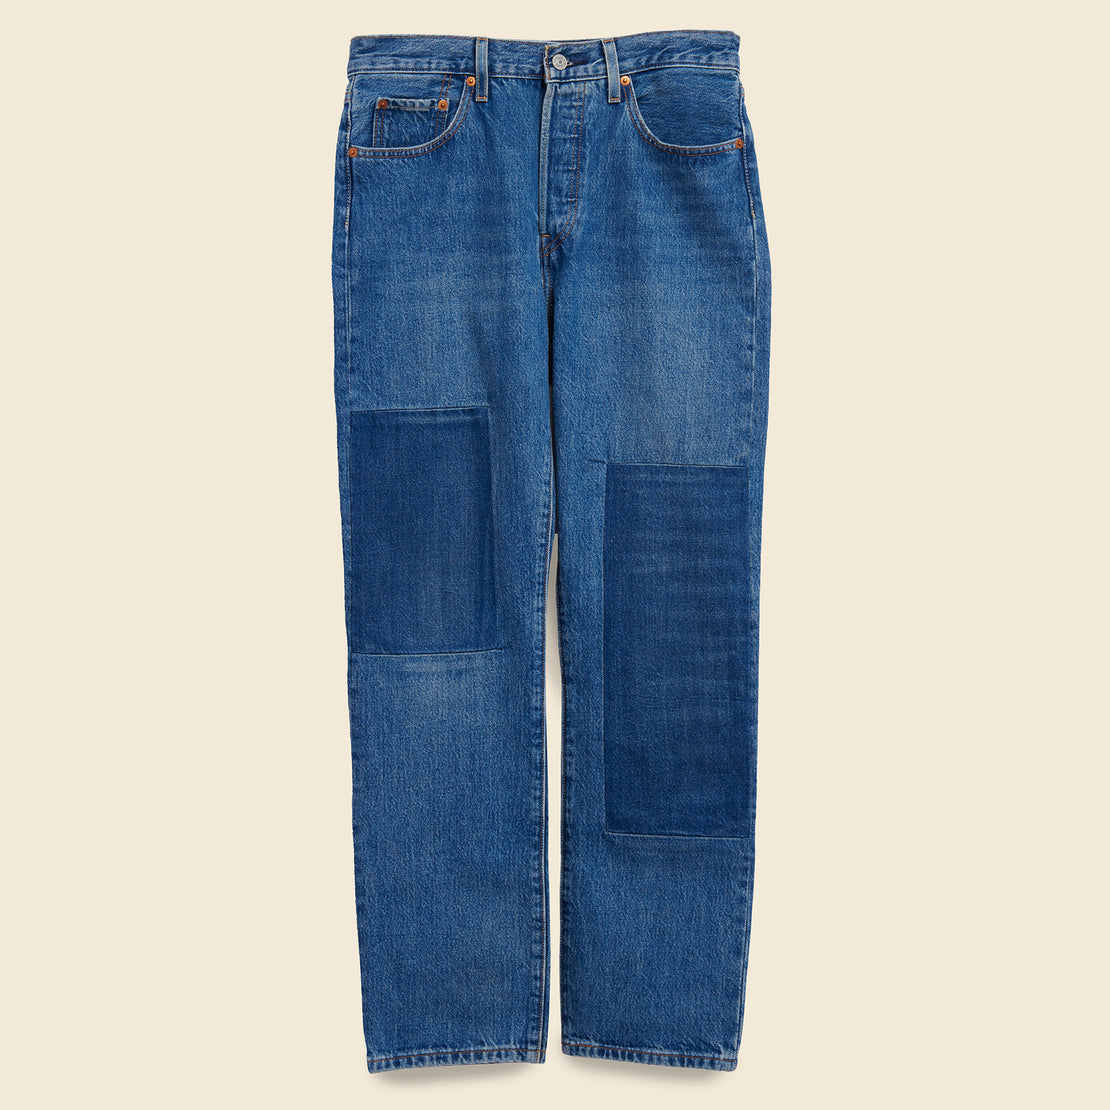 Levis Premium 501 Original Jeans - Patching In